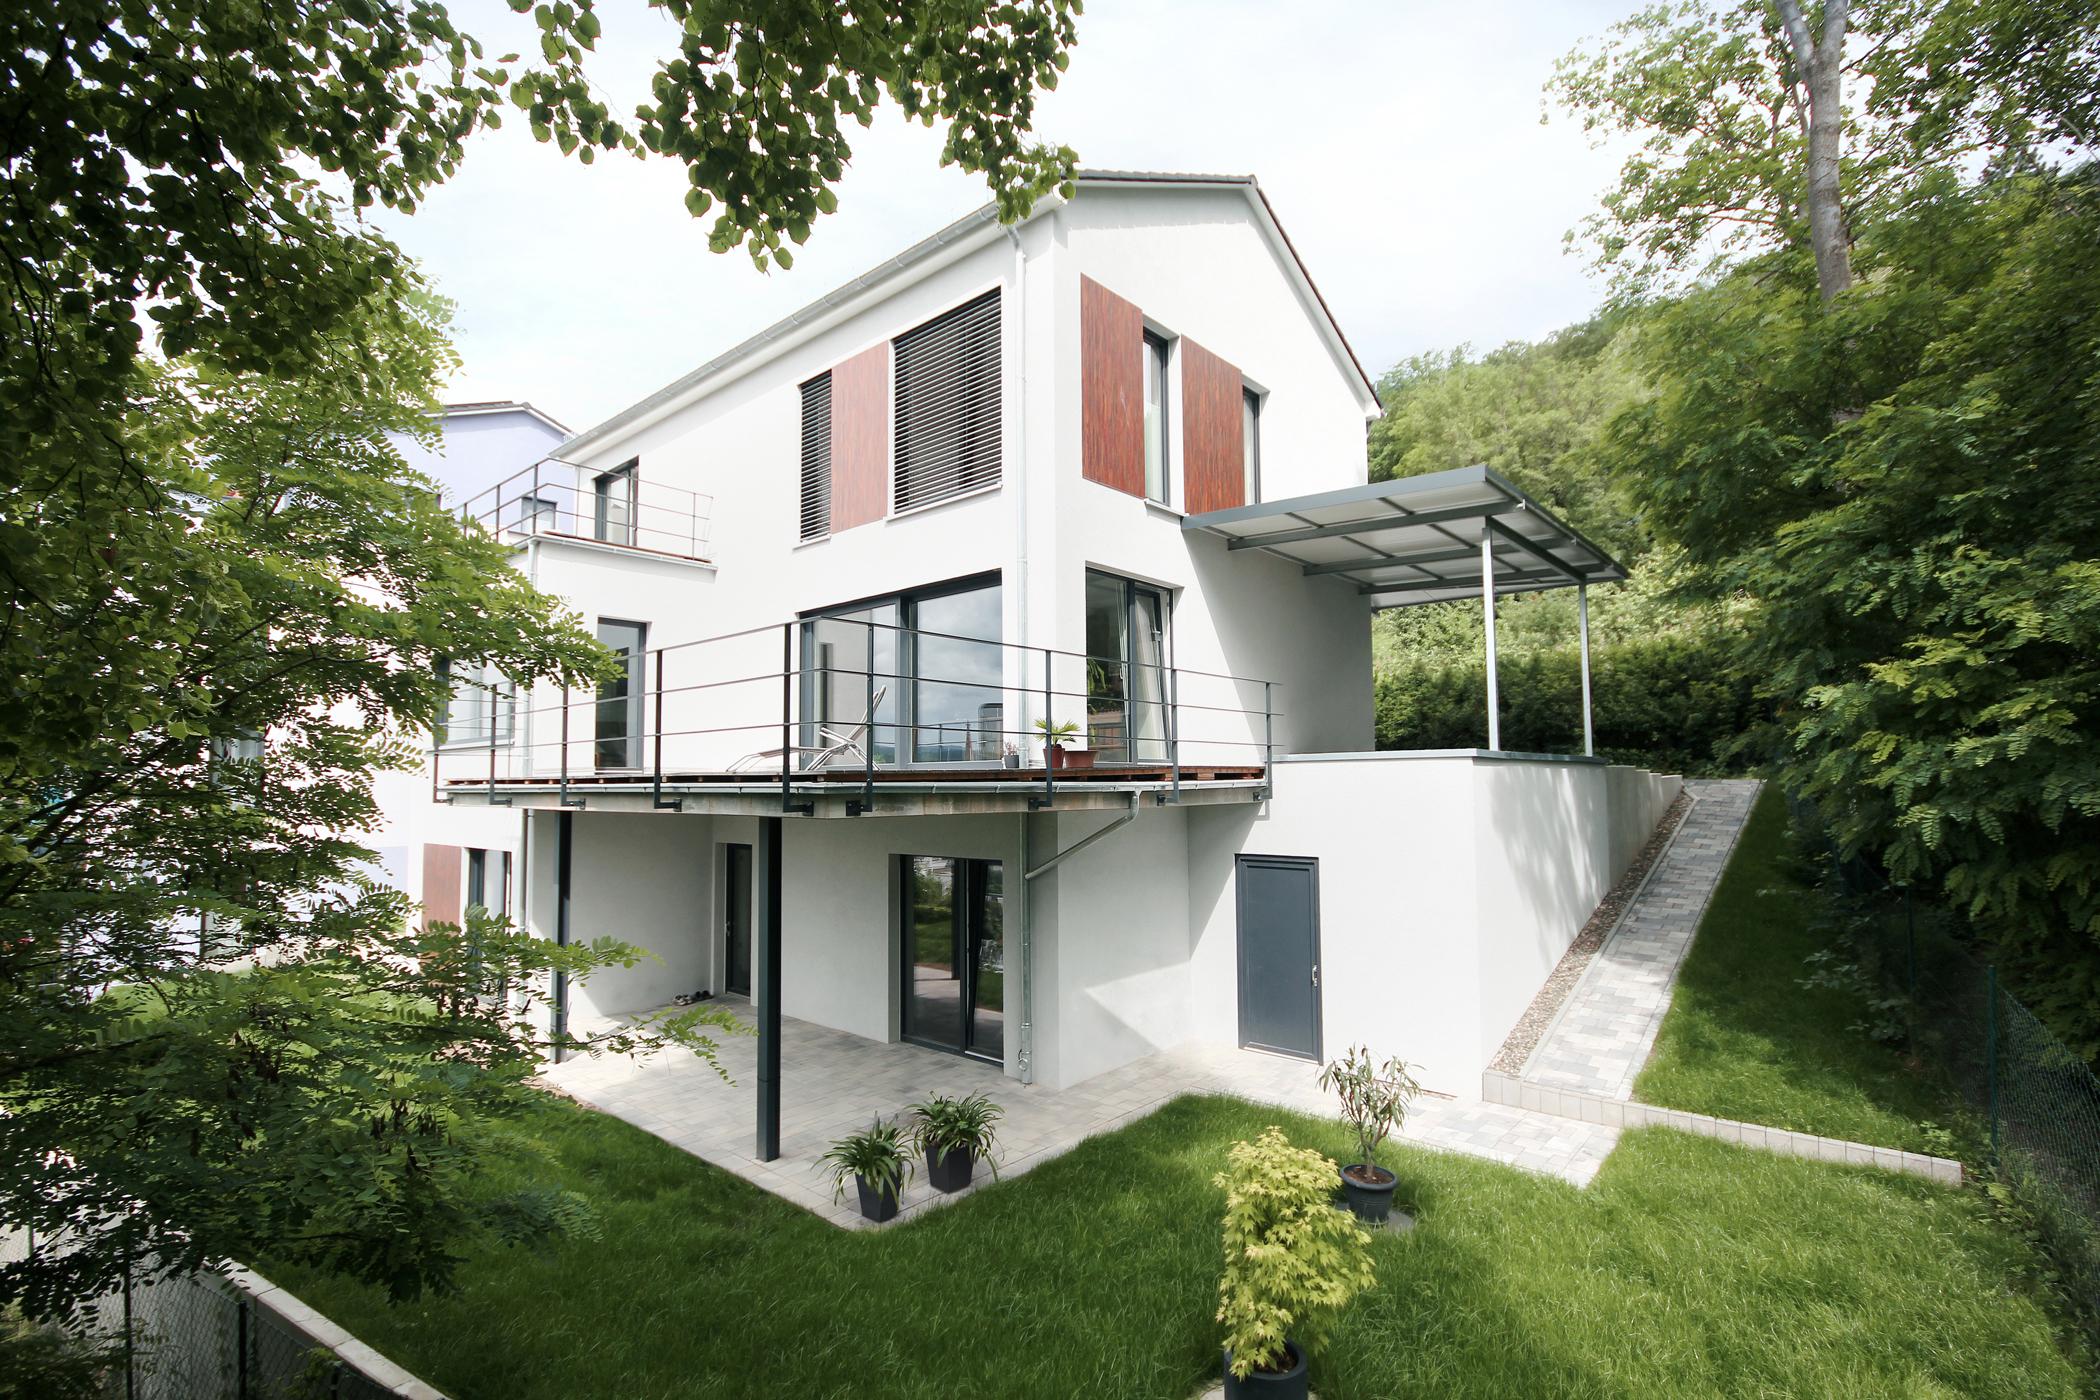 Einfamilienhaus Rudolstadt #bad #badezimmer ©http://www.planungsgruppe-korb.de/work/einfamilienhaus/wohnen